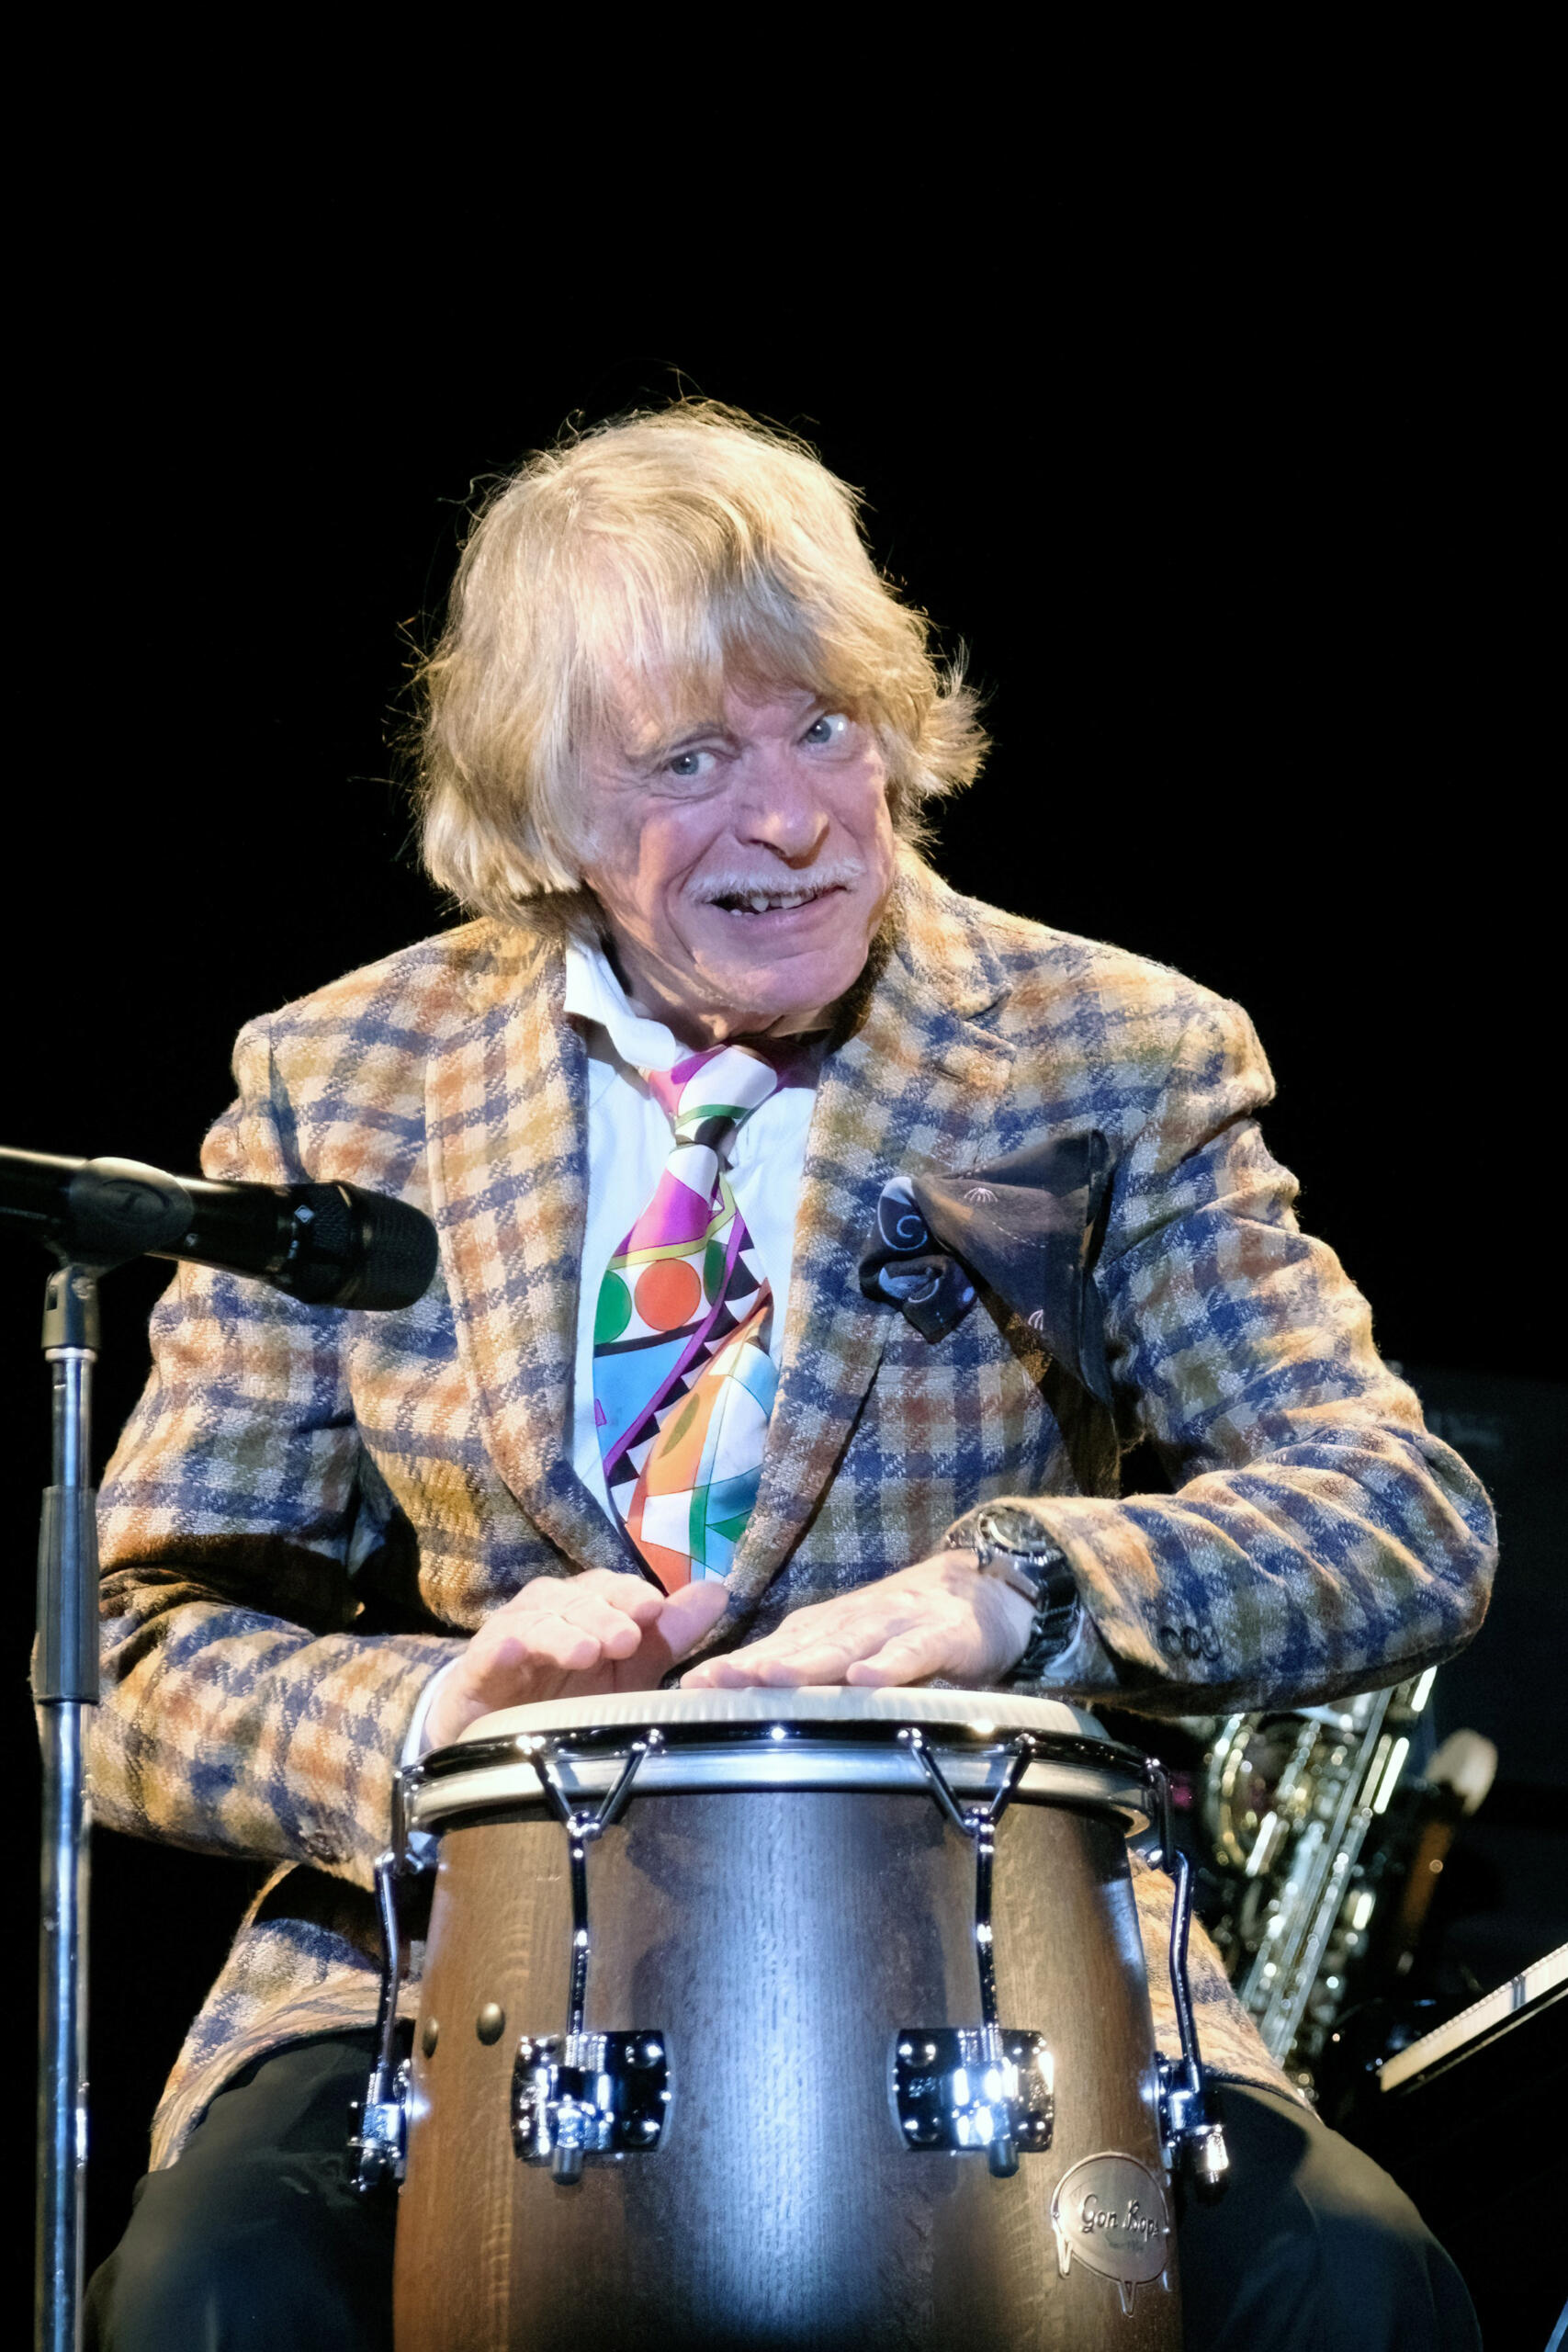 Fotografie des Comedians und Musikers Helge Schneider. Er sitzt vor einem Mikrofon auf einer Bühne und trommelt auf eine Trommel.